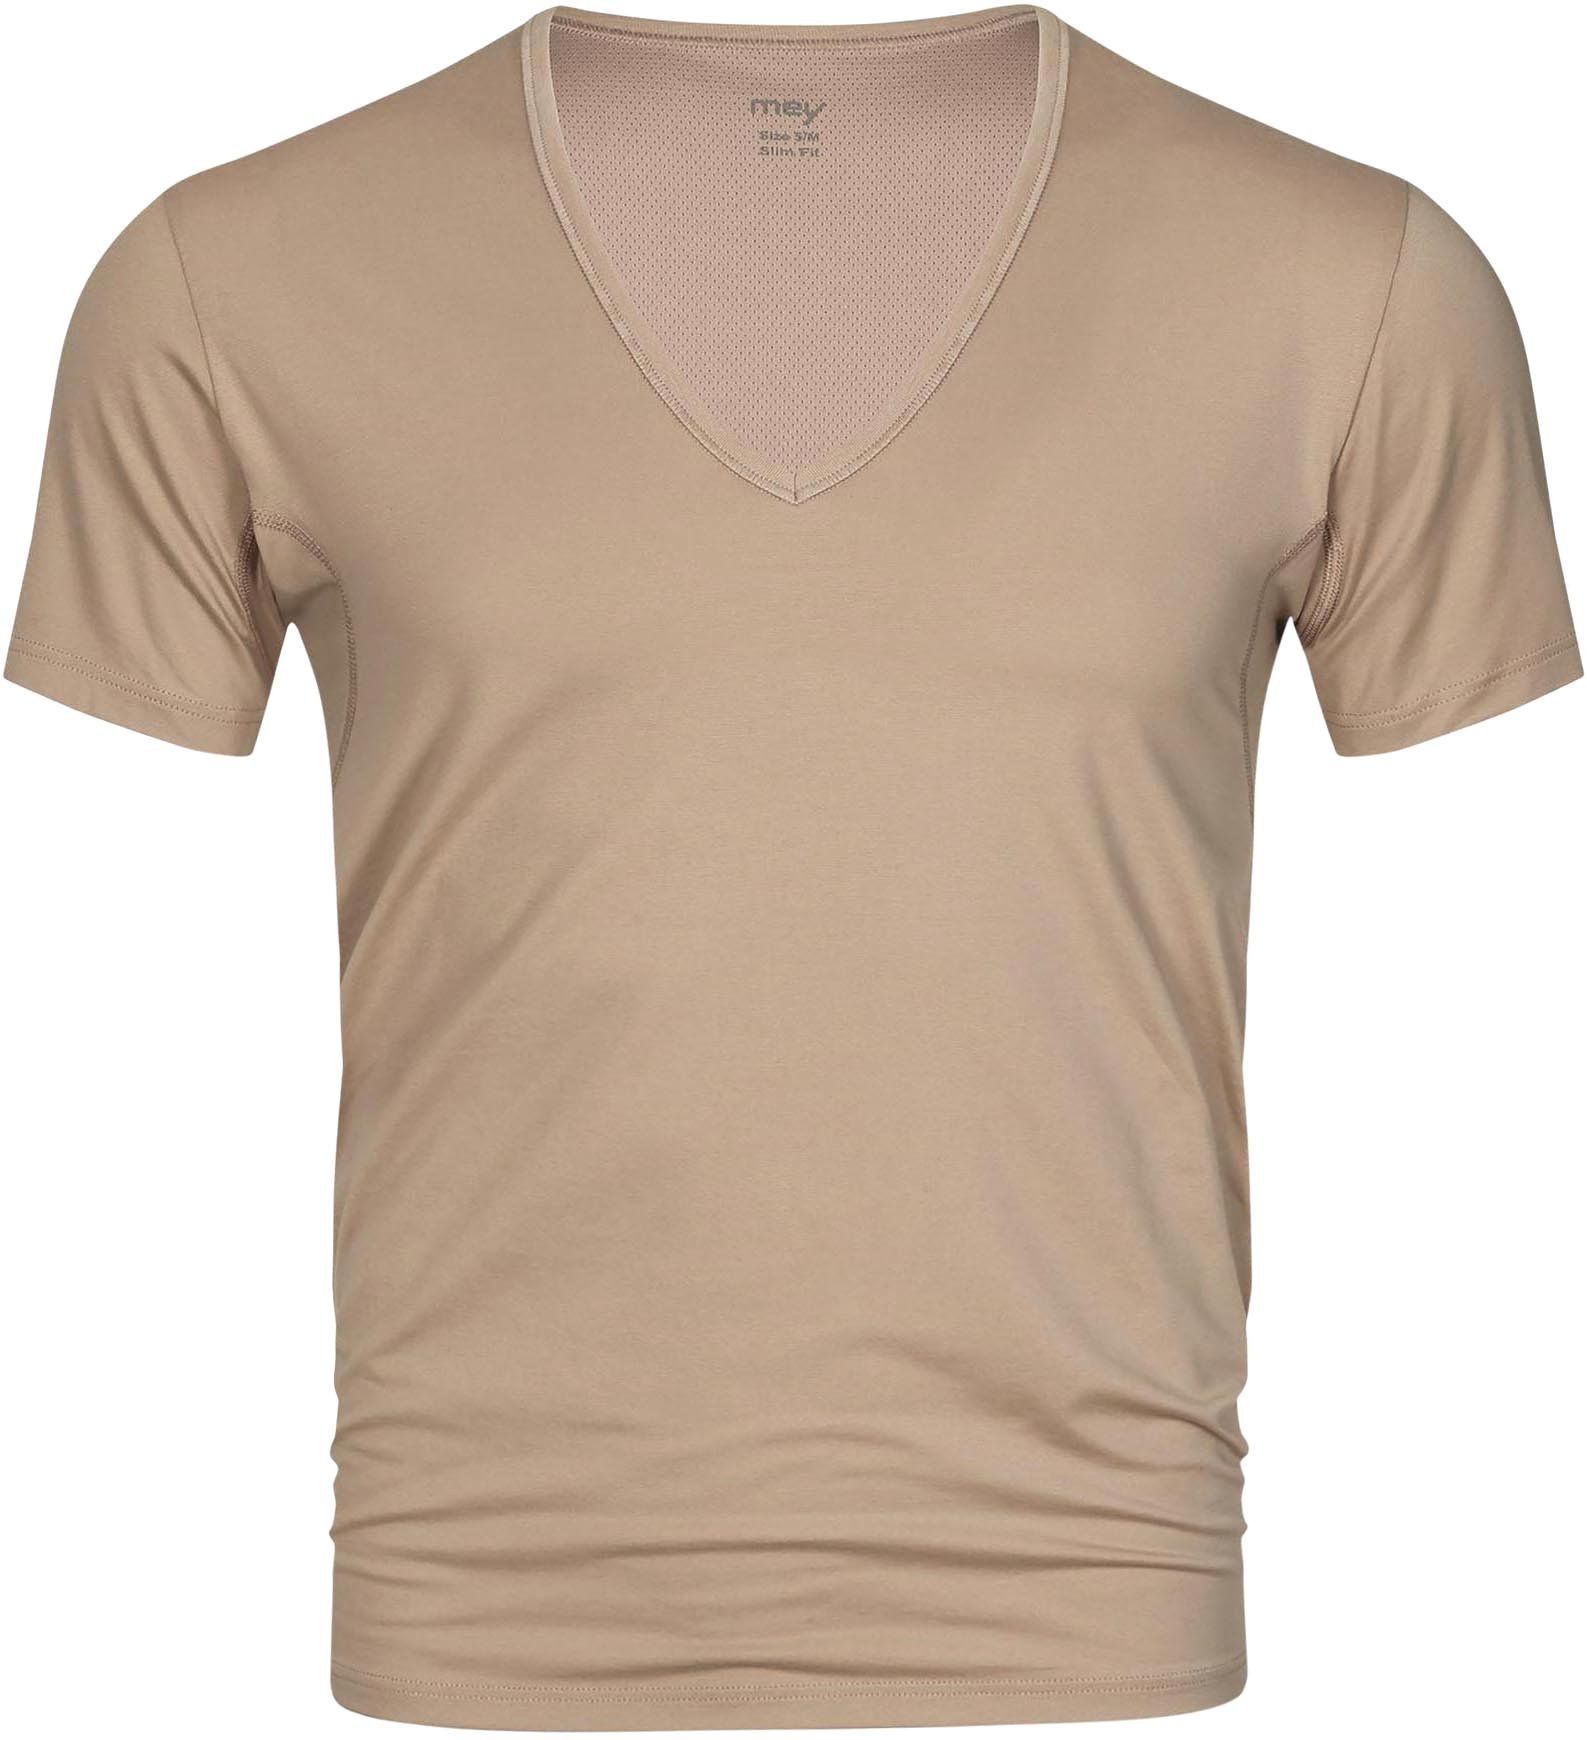 Mey Dry Cotton V-neck T-shirt Beige size 3XL